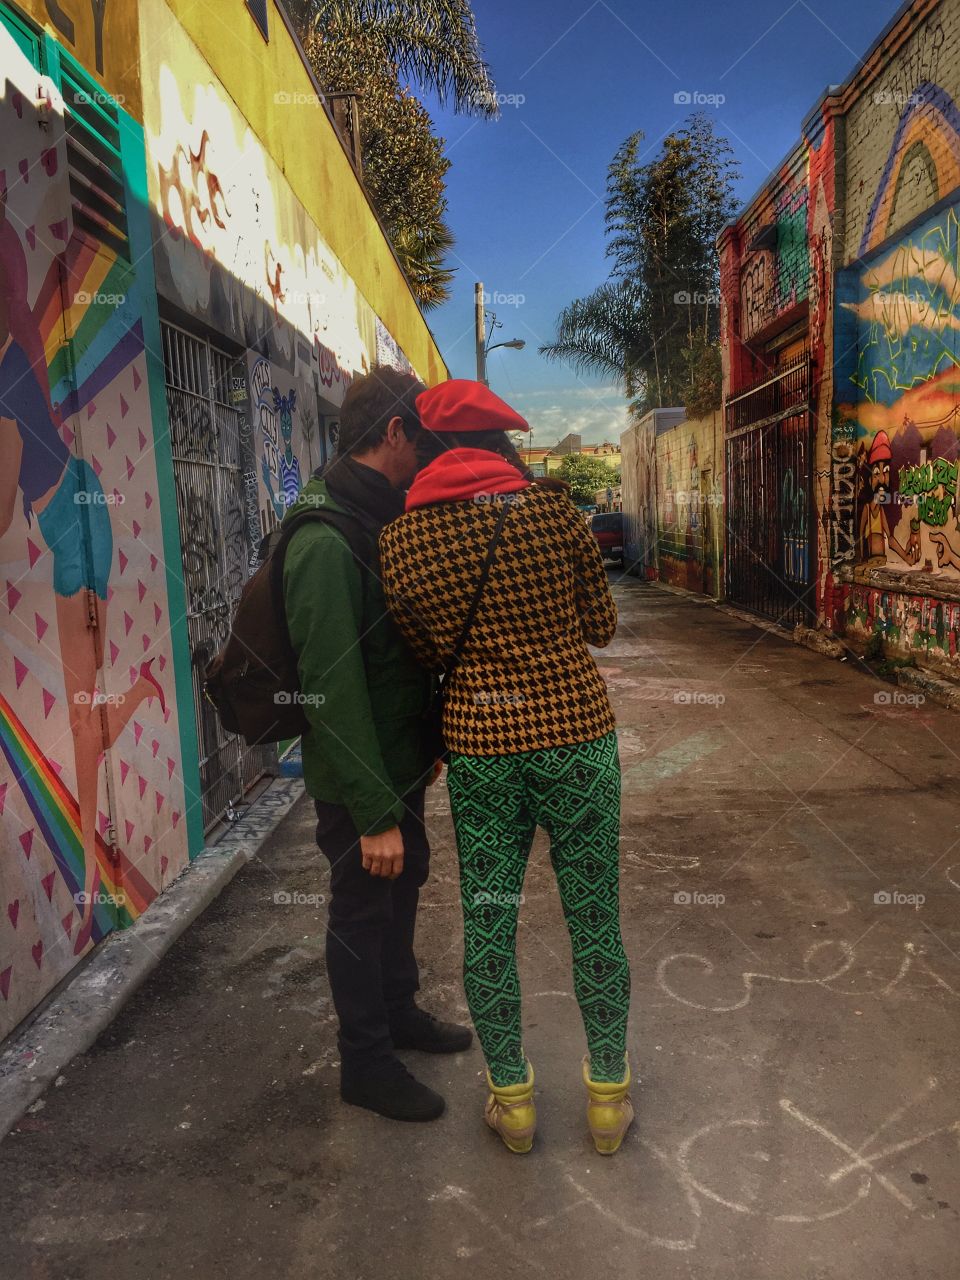 Two people standing near graffiti wall